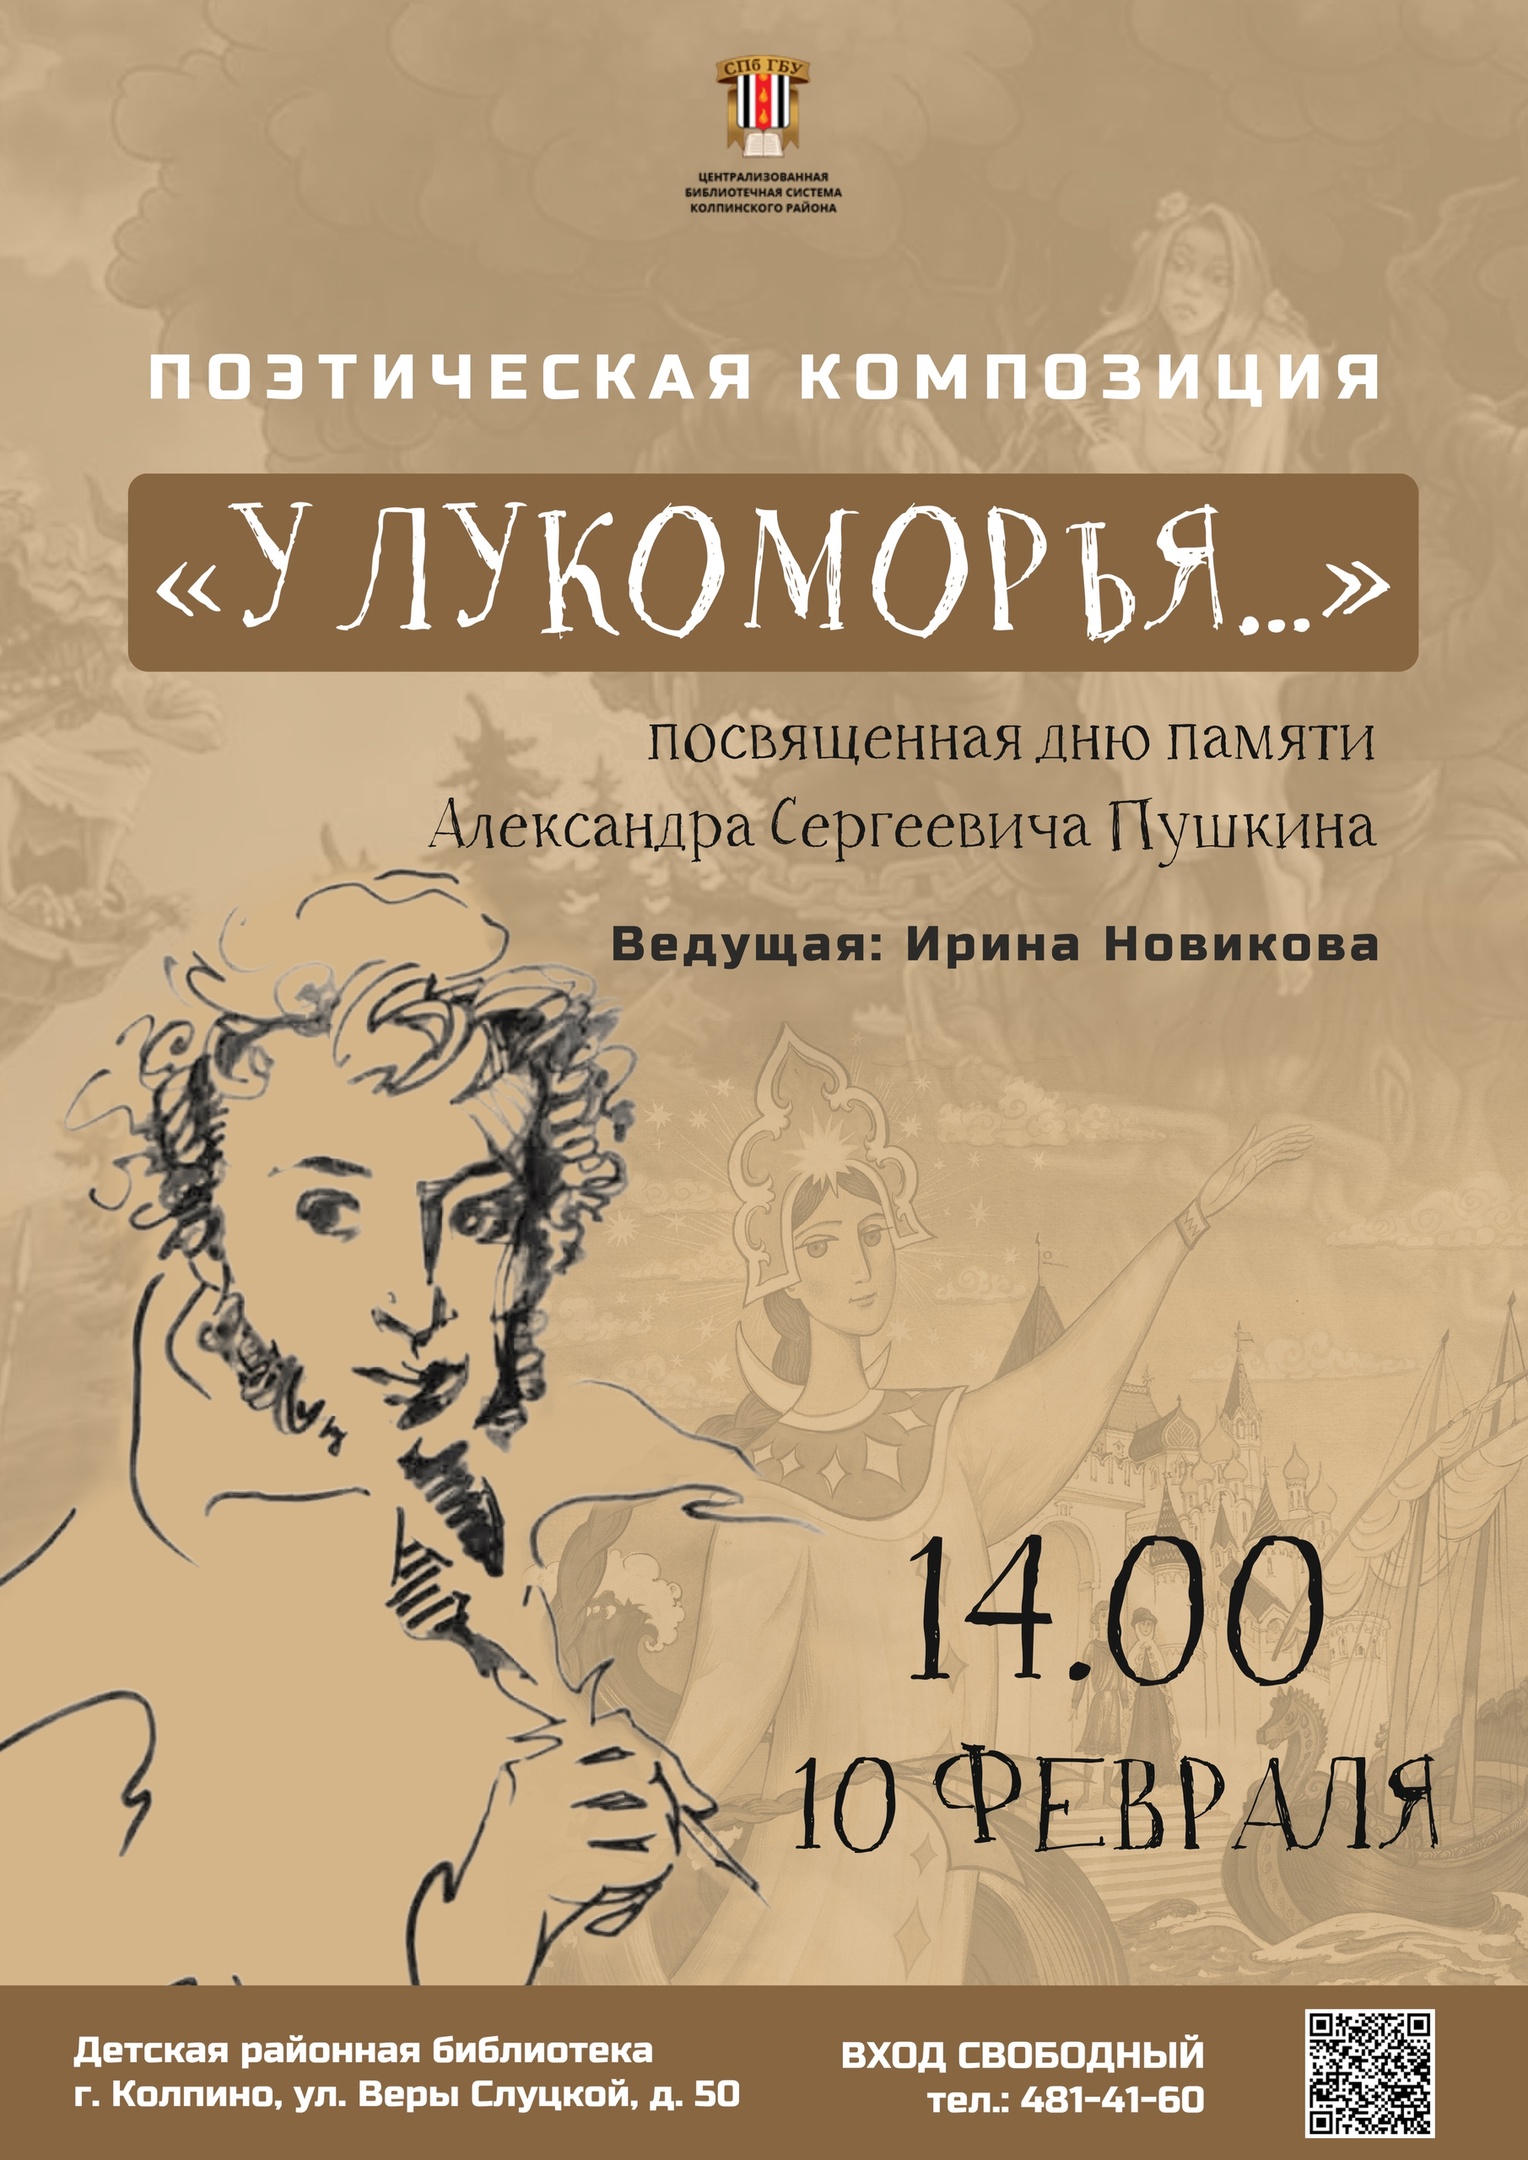 Поэтическая композиция «У Лукоморья…», посвященная дню памяти Александра Сергеевича Пушкина.